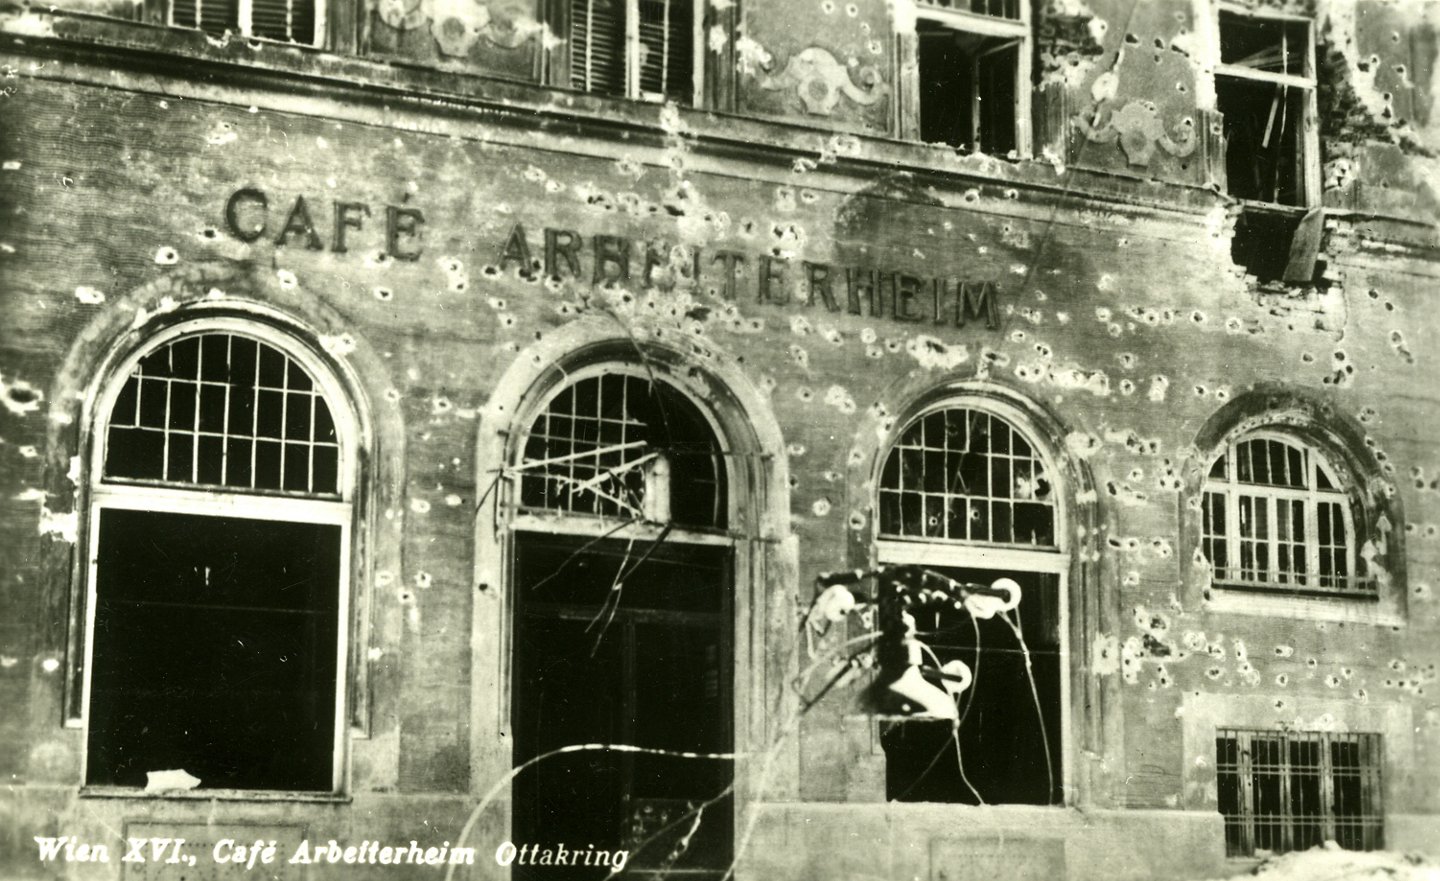 Im Februar 1934 zerschossen das Bundesheer und die Polizei nicht nur sozialdemokratische Einrichtungen, sondern auch die Erste Republik. Hier das Café Arbeiterheim in Ottakring